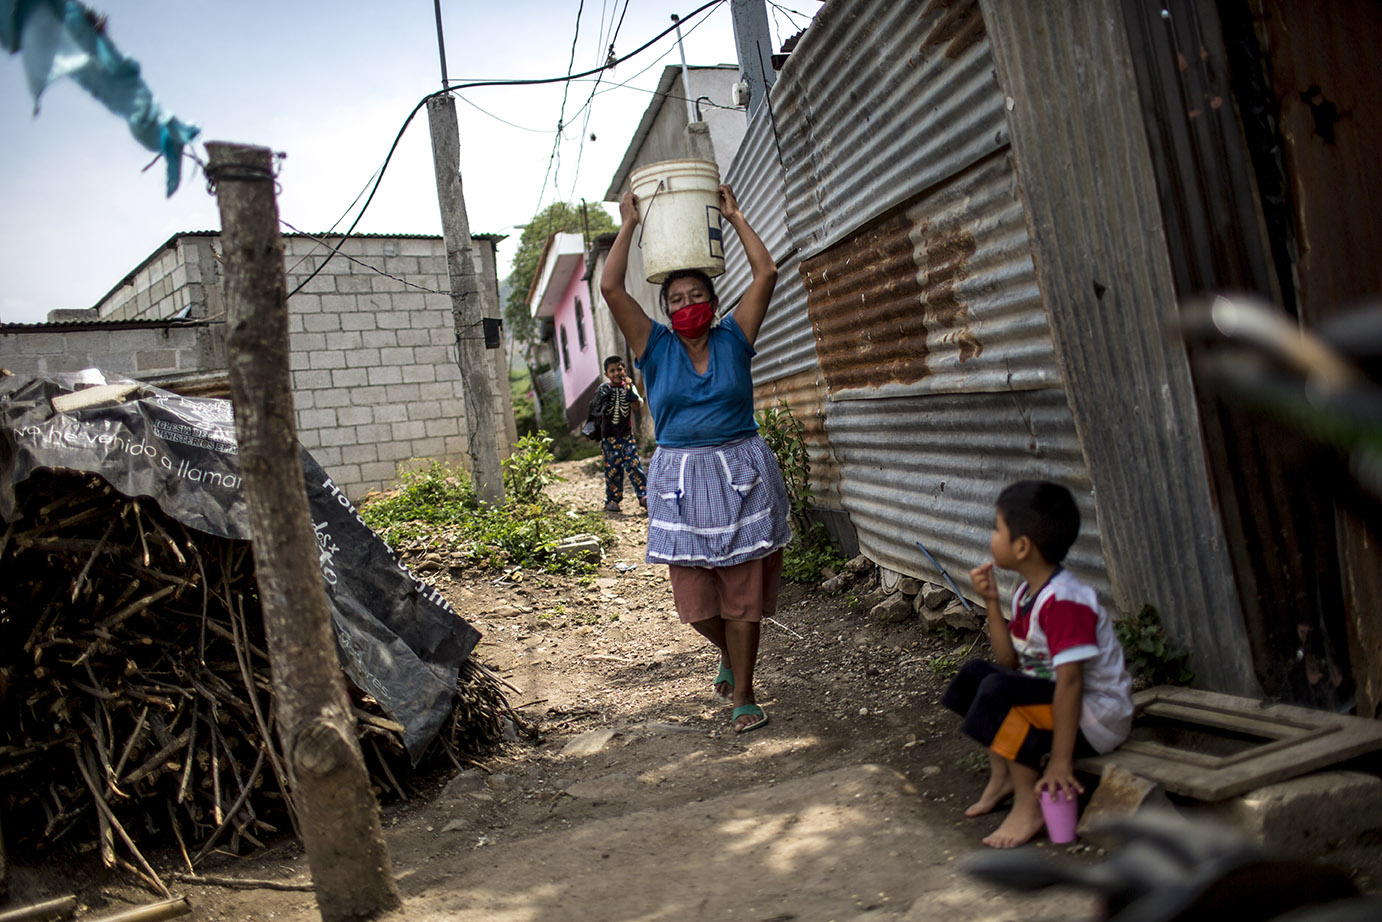 Norma Idalia Ciam de Guamuch, 50, acarrea agua hacia su casa, en la aldea Lo de Rodríguez, sector 2 Vuelta Grande, zona 18 capitalina, durante una distribución de agua por parte de Empagua, en mayo 2020. Simone Dalmasso